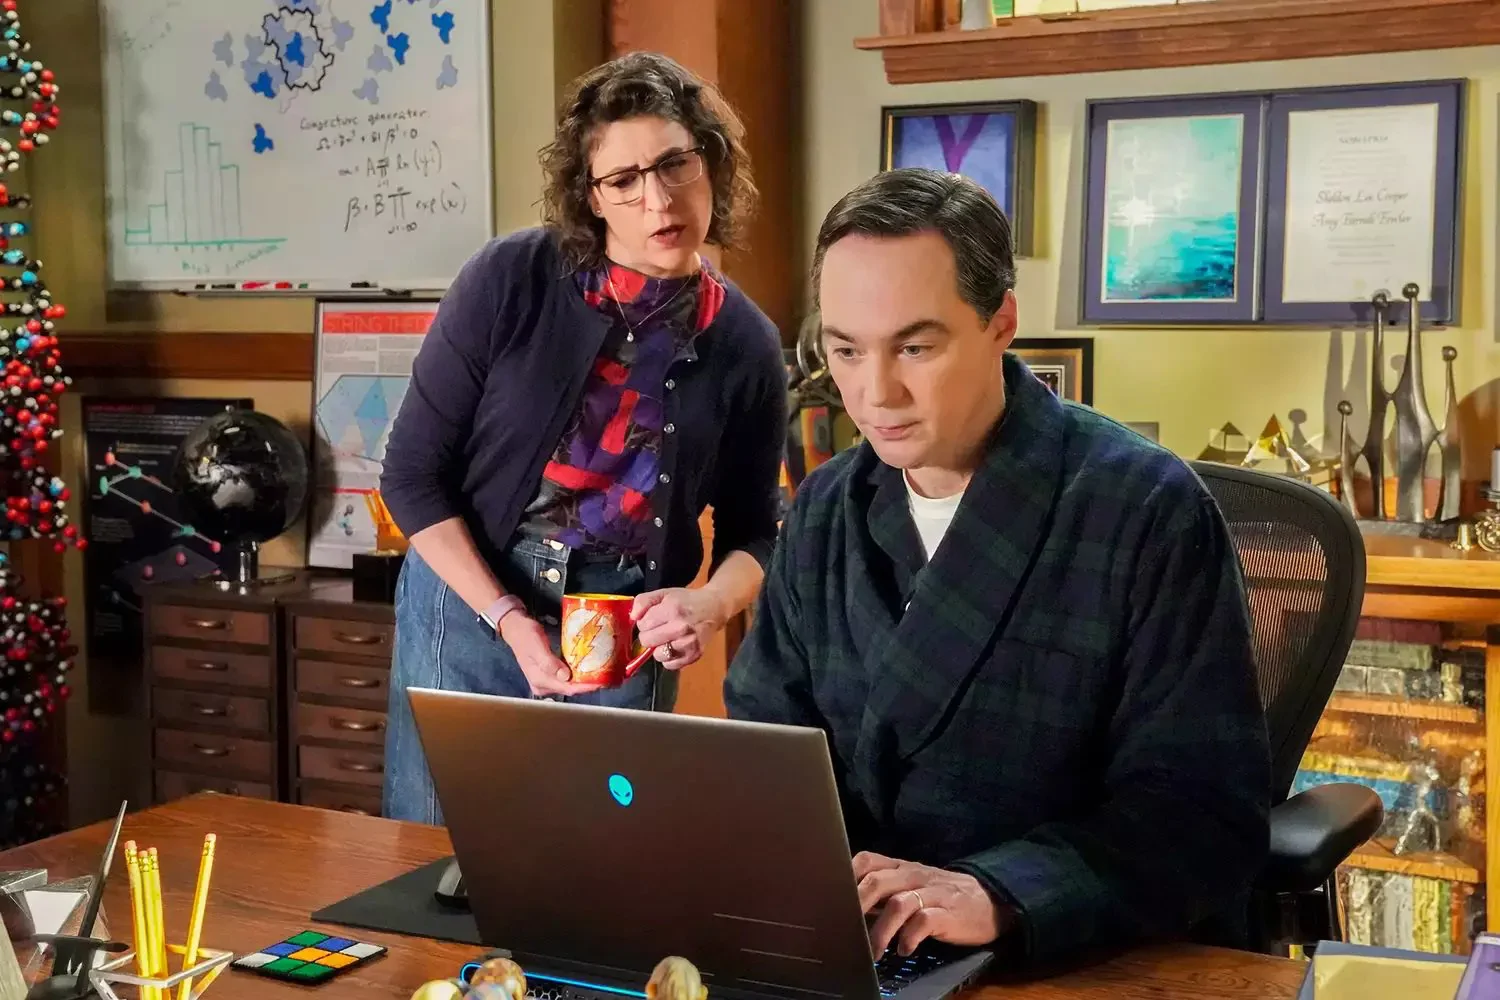 Amy i Sheldon powracają! Jim Parsons i Mayim Bialik na zdjęciach z finału Młodego Sheldona